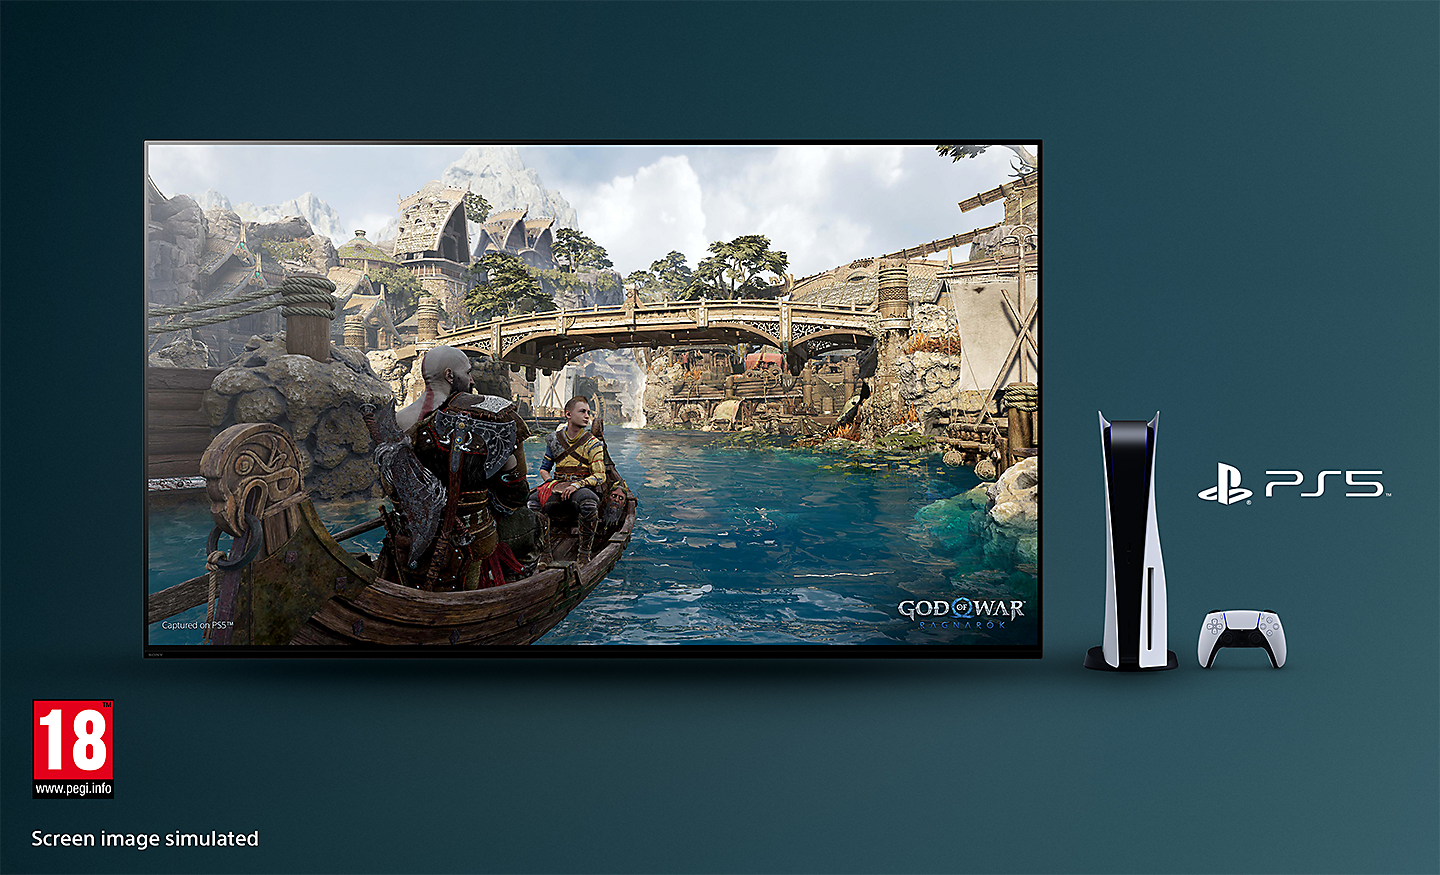 Телевізор BRAVIA із зображенням гри God of War: Ragnarok, на якому показано човен на річці з мостом на задньому плані та консоллю PS5™, контролером і логотипом PS5™ праворуч від телевізора